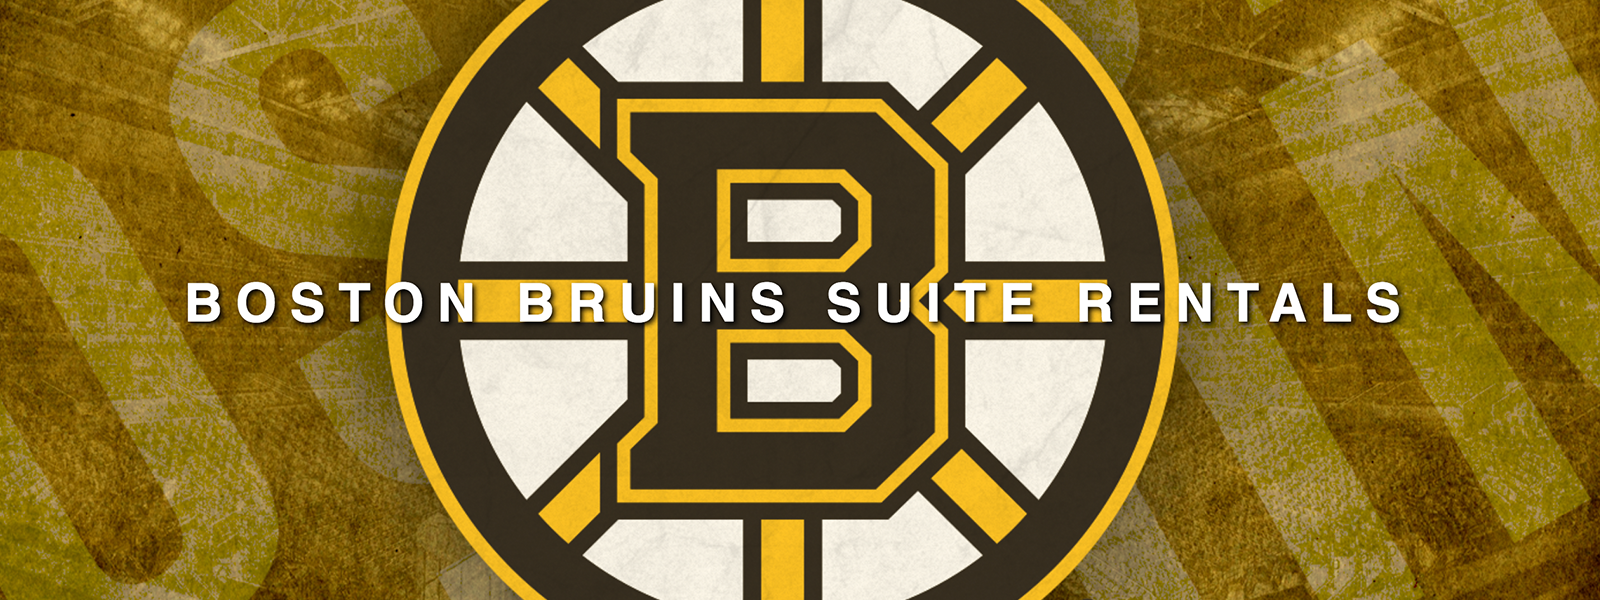 Bruins Suite Rentals | TD Garden